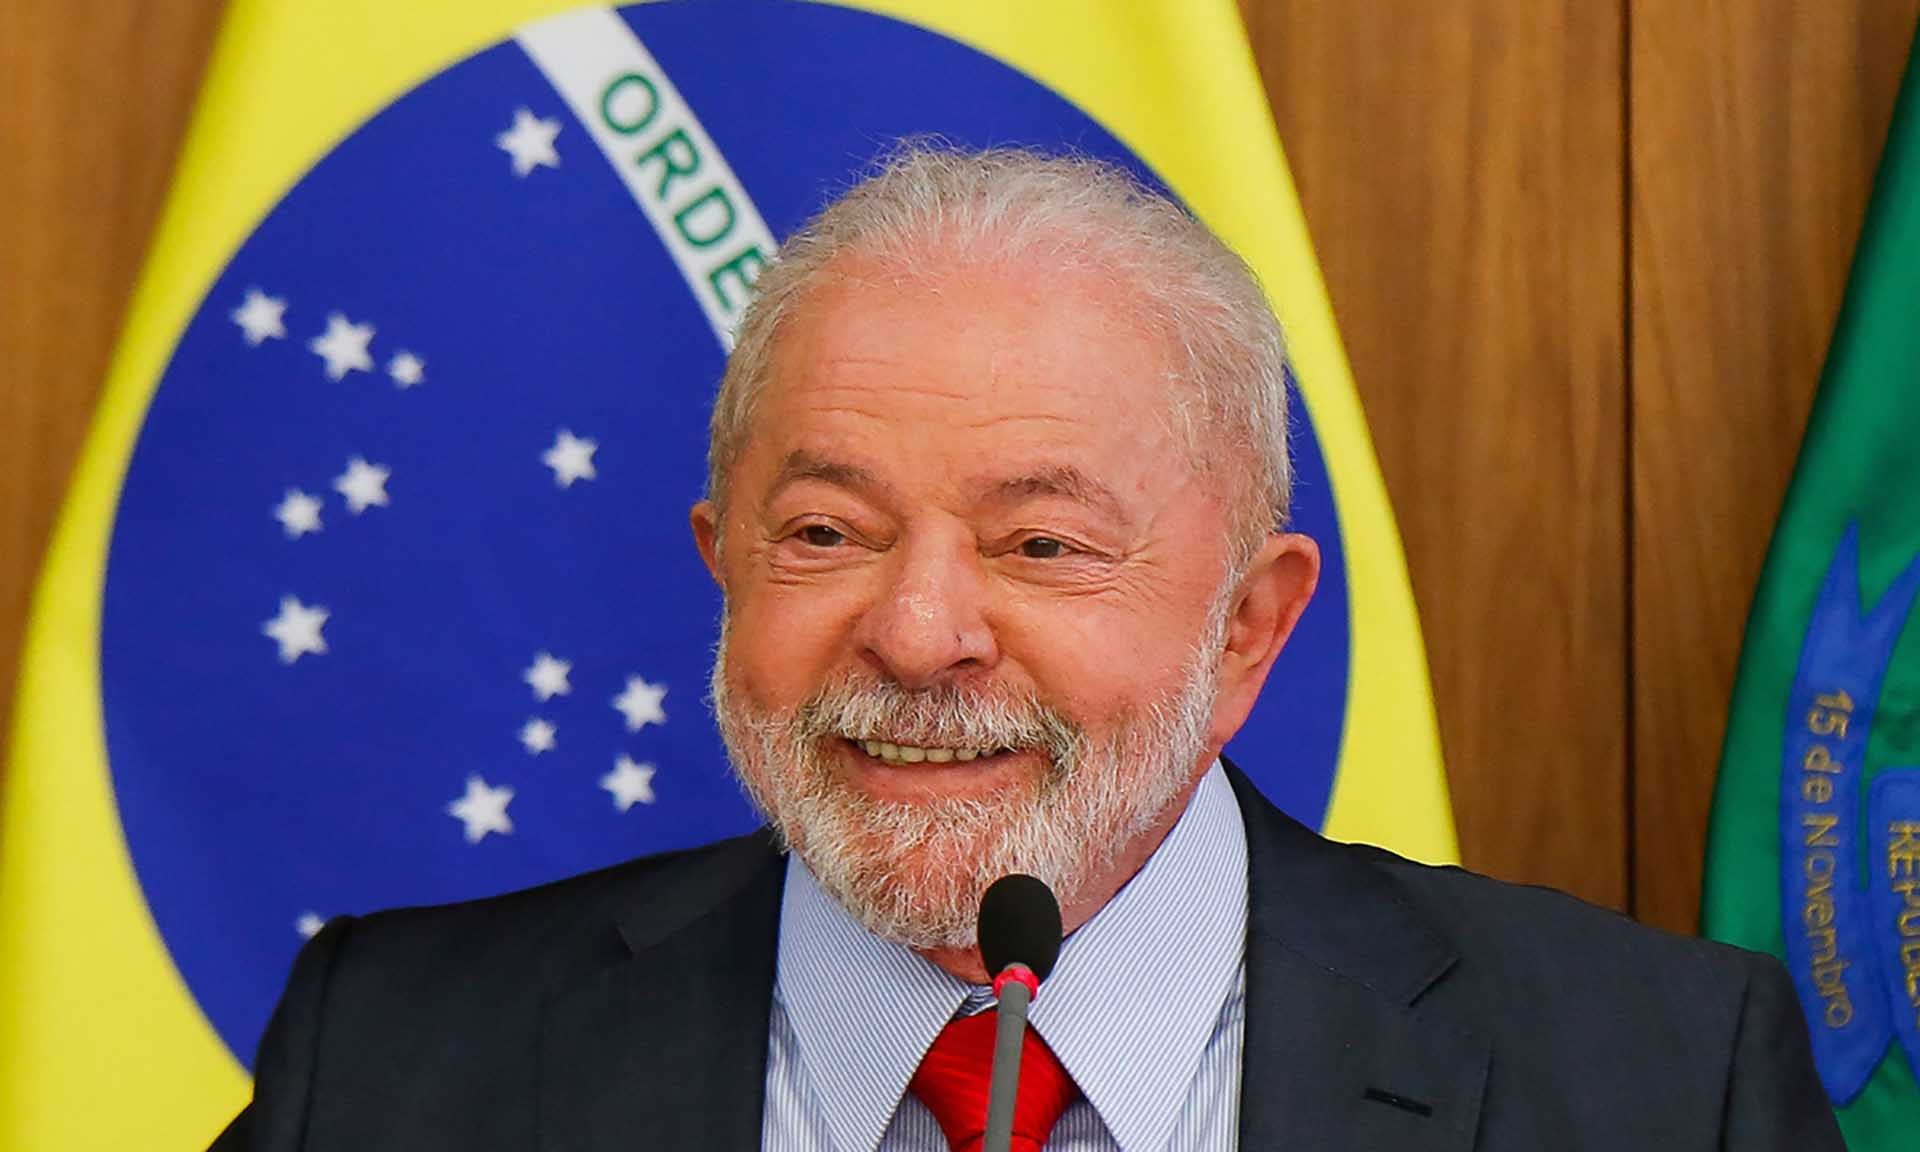 Chính quyền Brazil của Tổng thống Lula Da Silva (ảnh) đã bày tỏ sự thận trọng trước khả năng BRICS kết nạp thêm thành viên. (Nguồn: AFP)